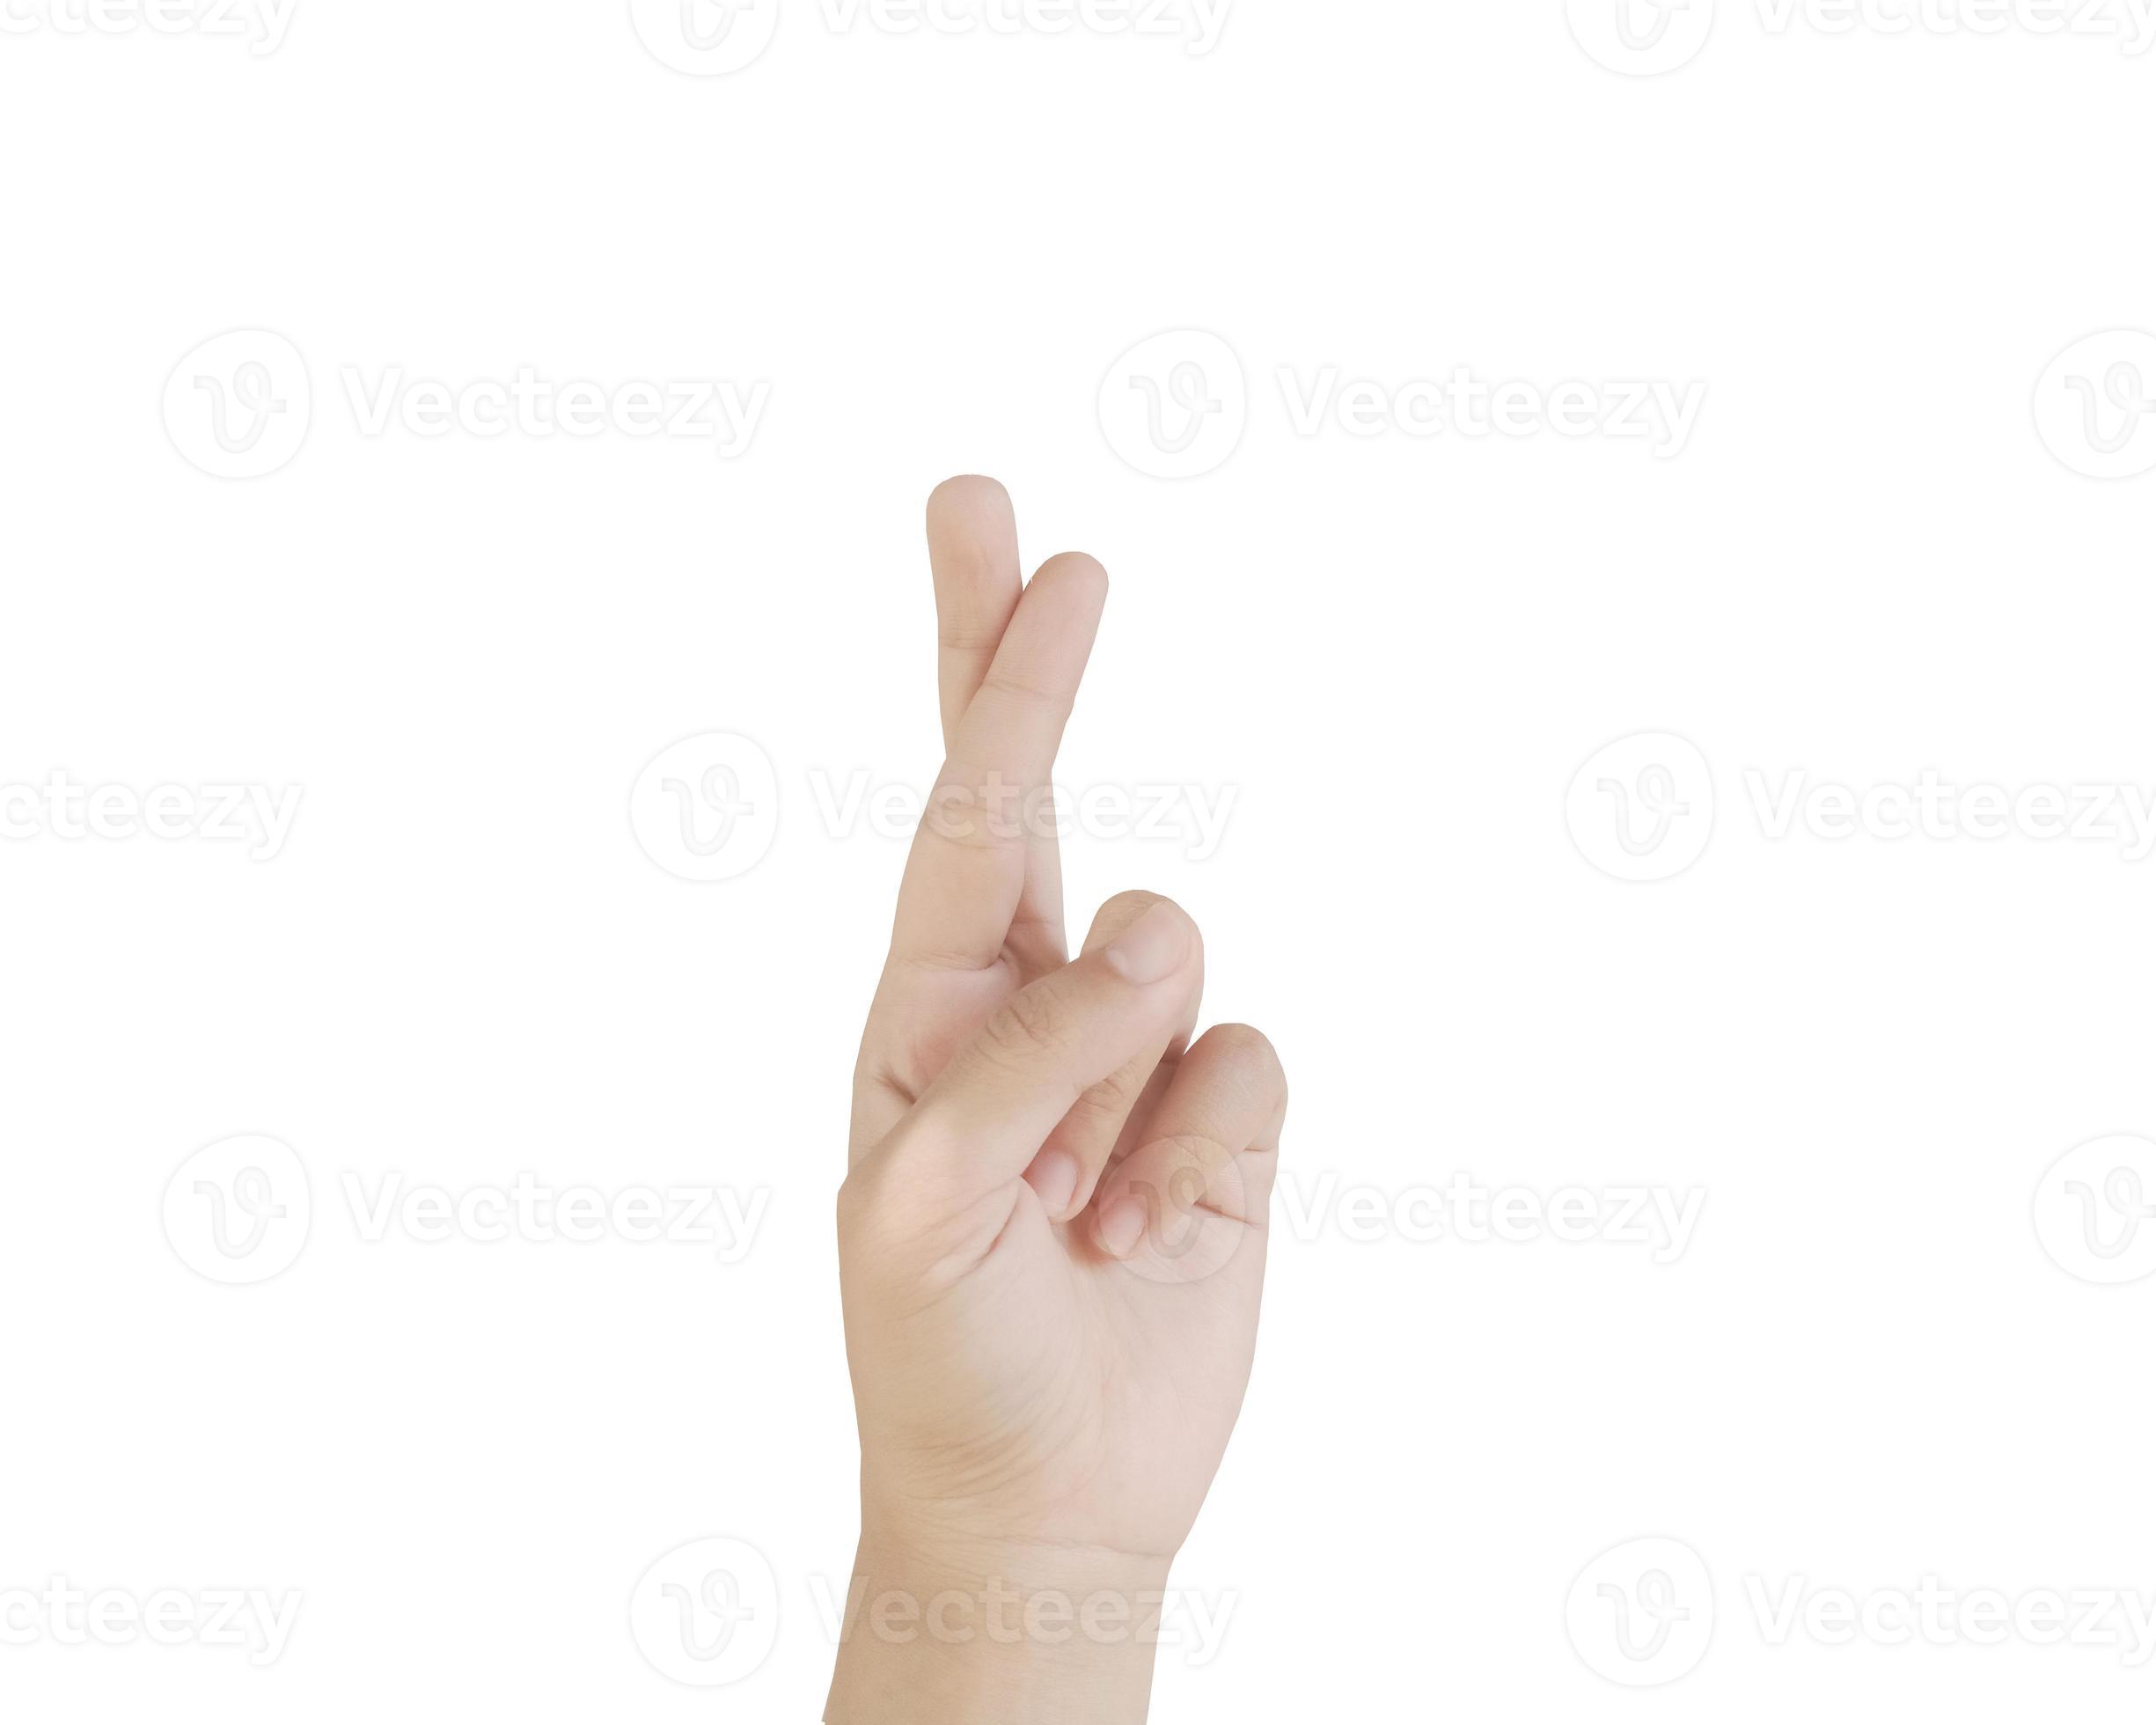 nahaufnahme asiatisch female15-20 alter hand zeigen zwei finger